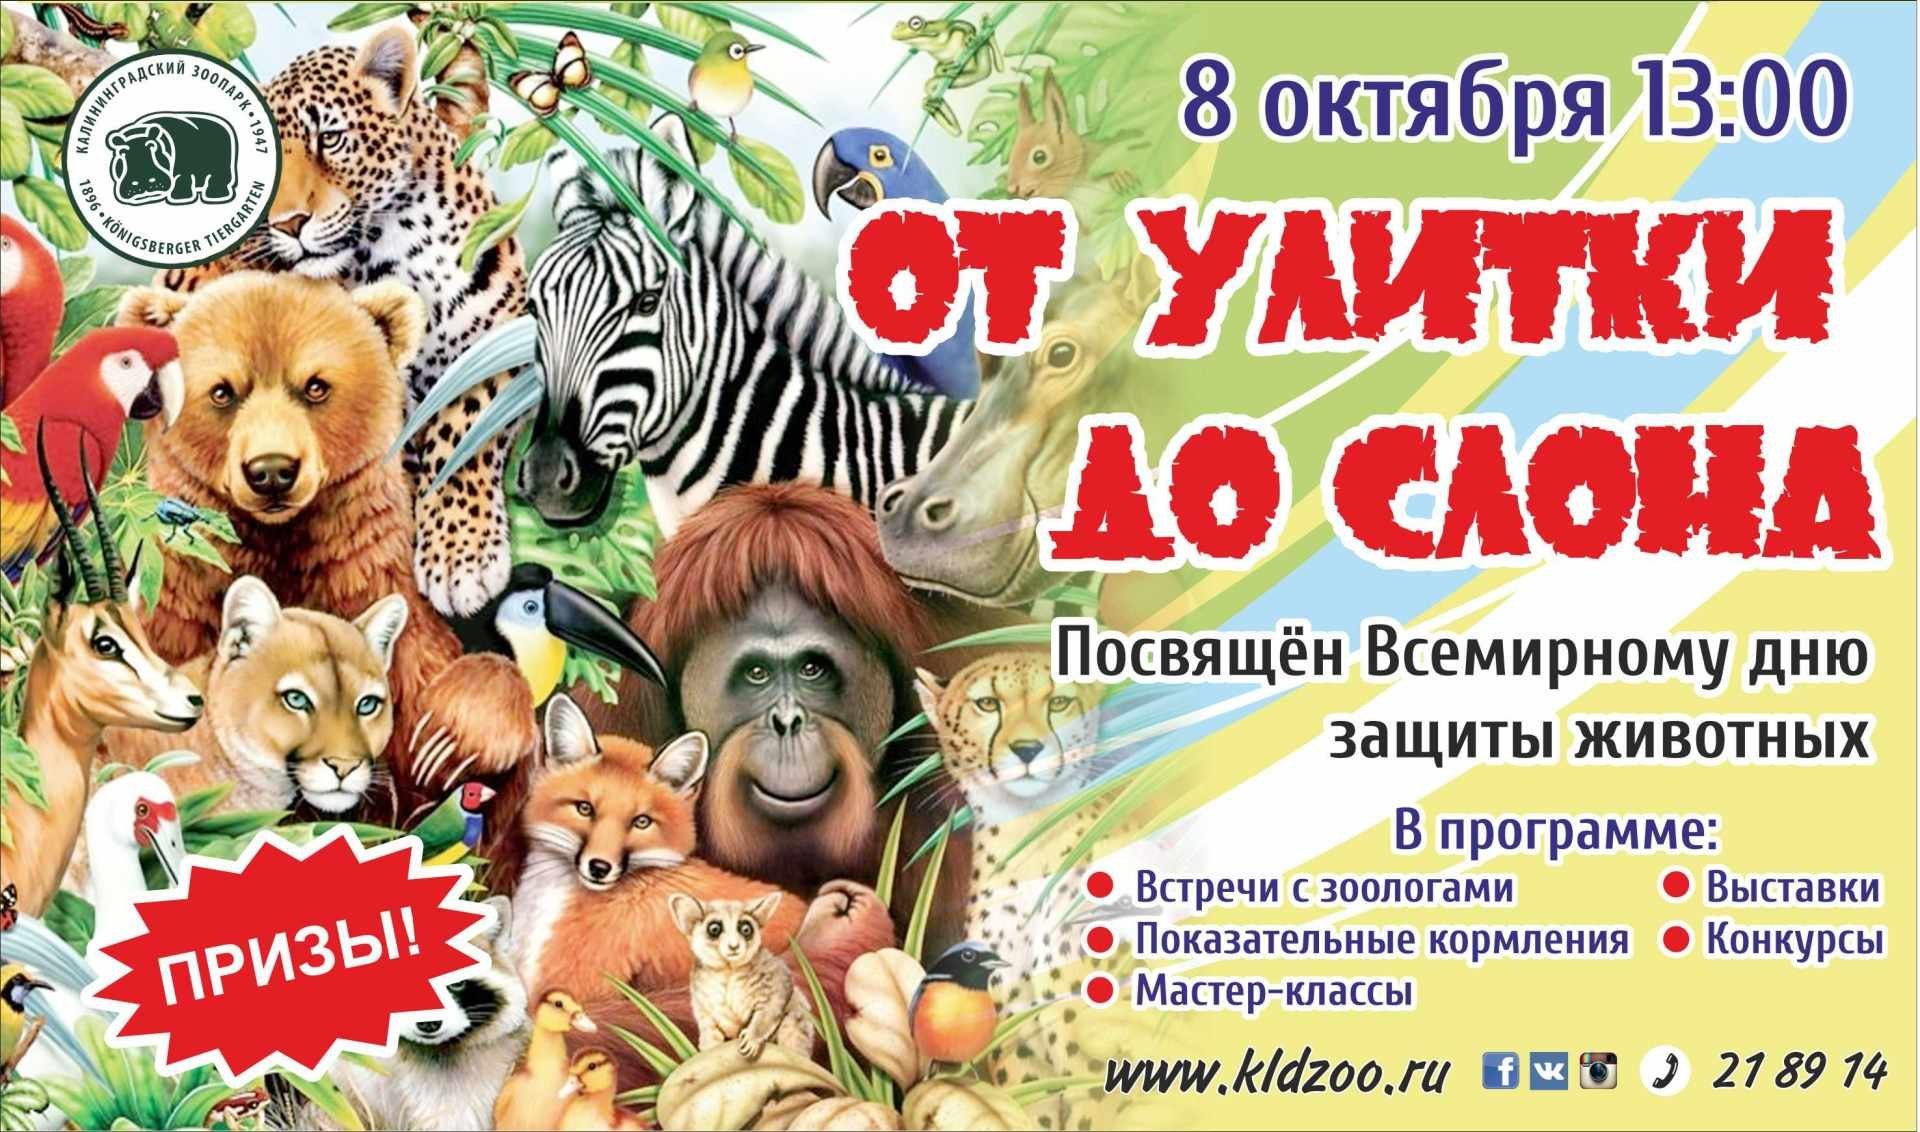 Мир животных праздник. День защиты животных. Всемирный день защиты животных. Афиша зоопарка для детей. Приглашаем в зоопарк.